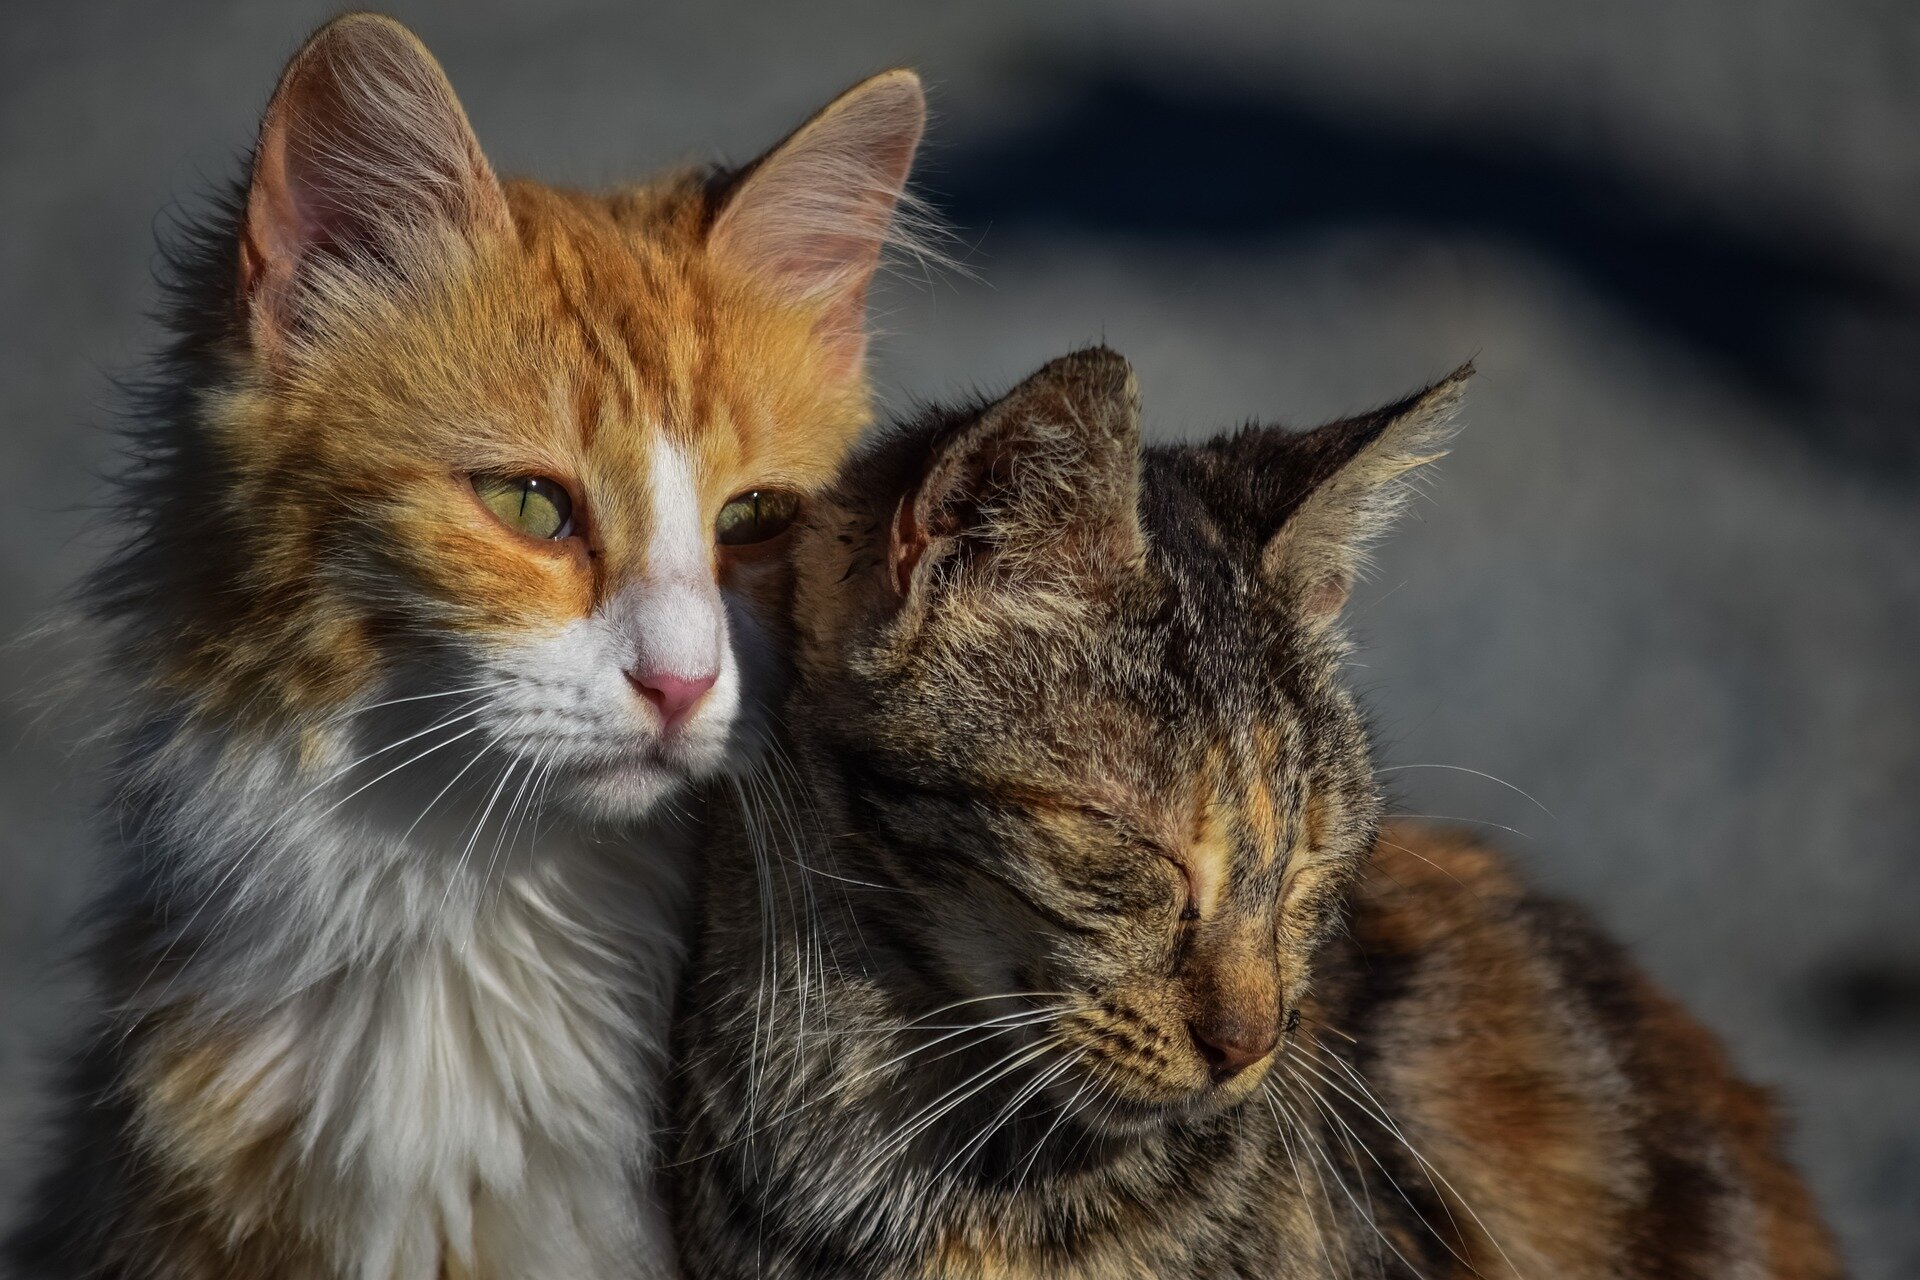 Les félins français se révèlent moins réceptifs aux appels de chats mais réagissent plus rapidement aux signaux visuels.